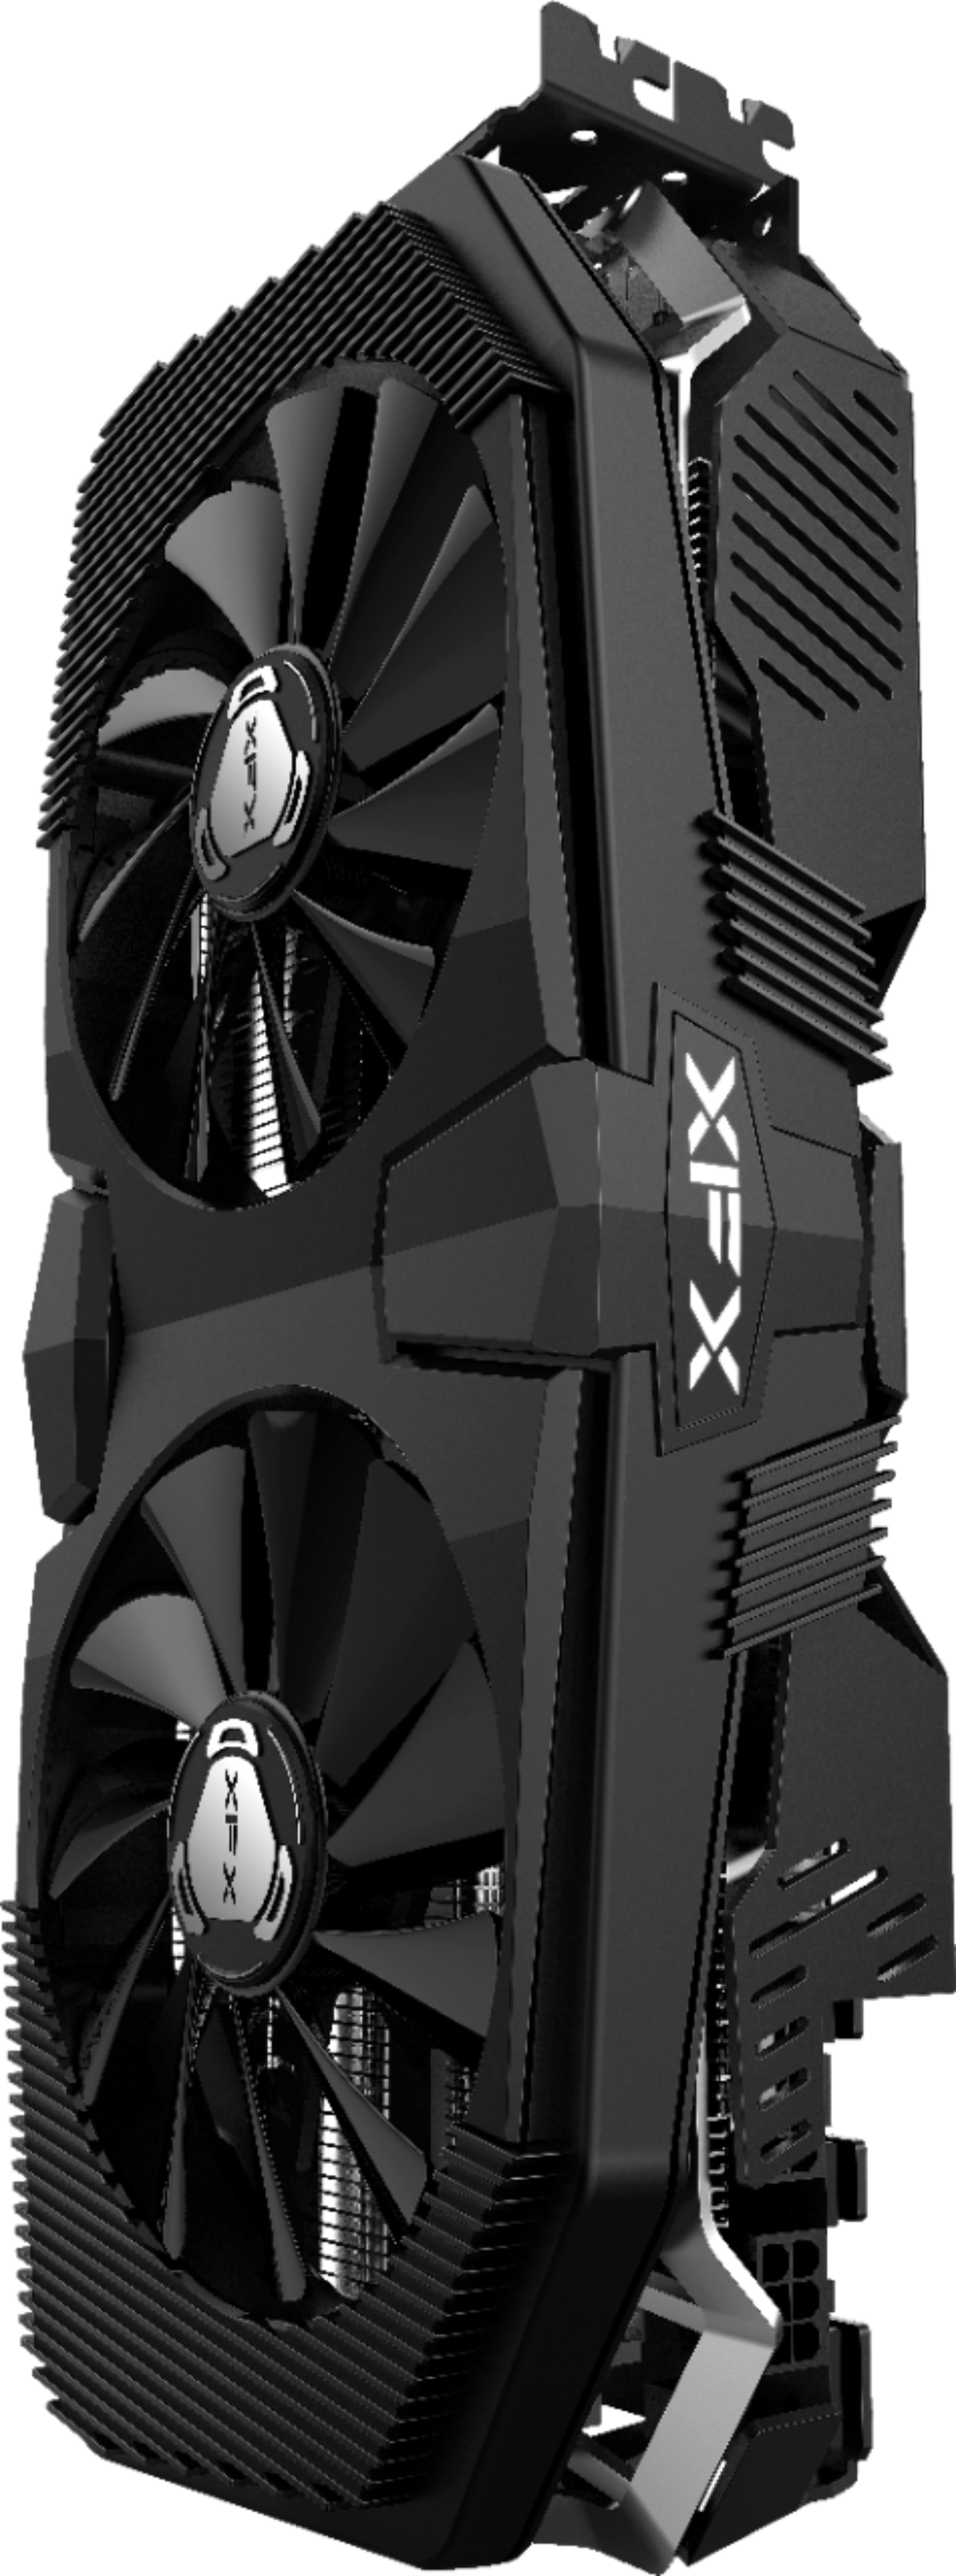 Best Buy: XFX AMD Radeon RX 5700 XT RAW II 8GB GDDR6 PCI Express 